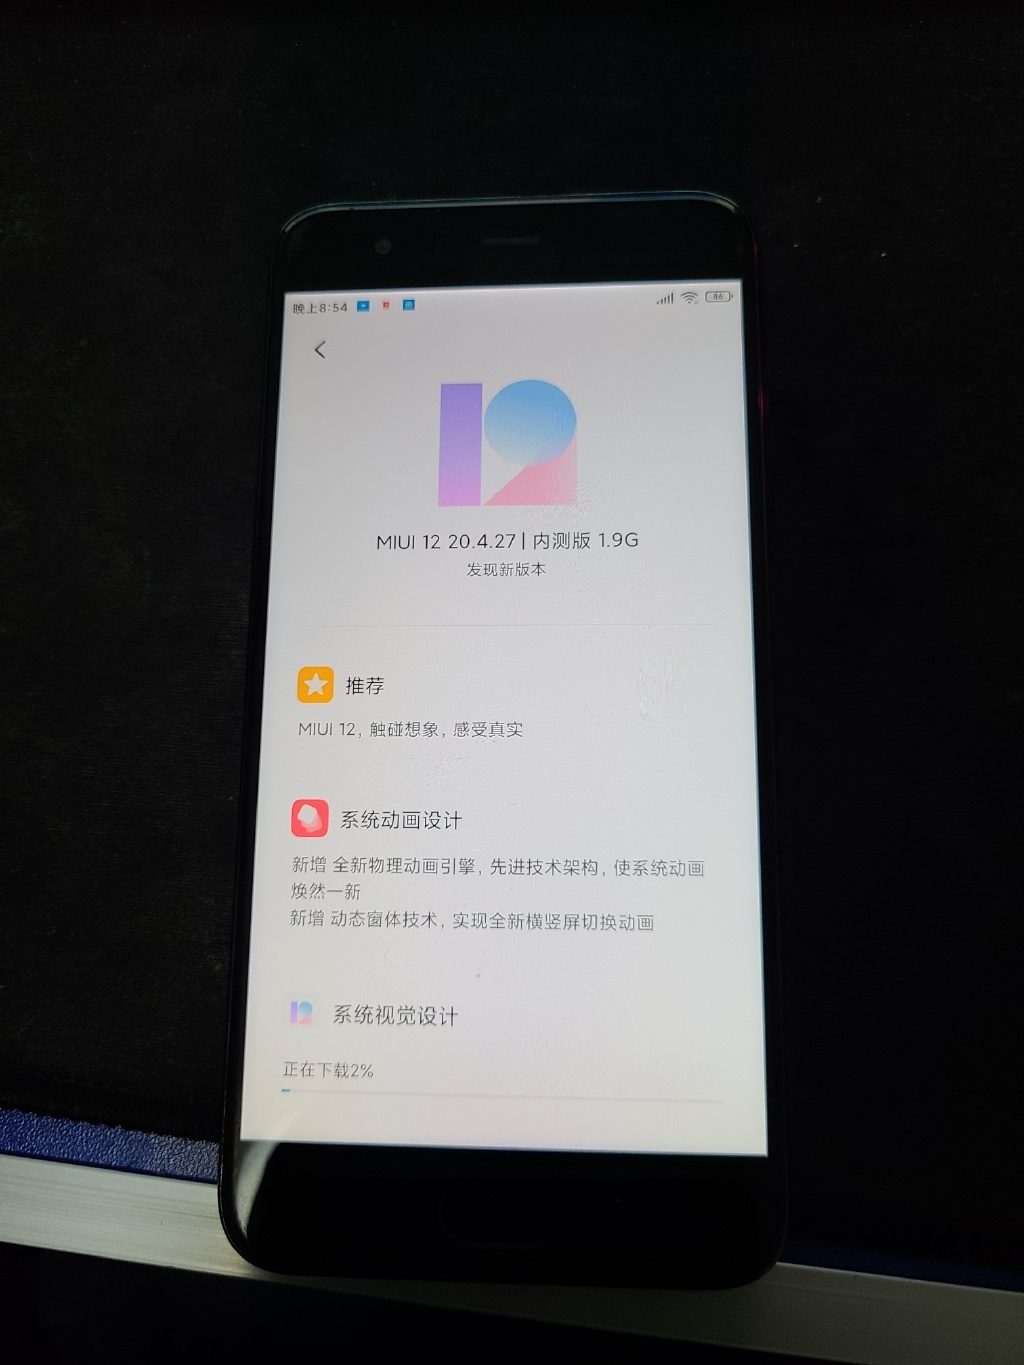 Xiaomi Mi 6 получит MIUI 12